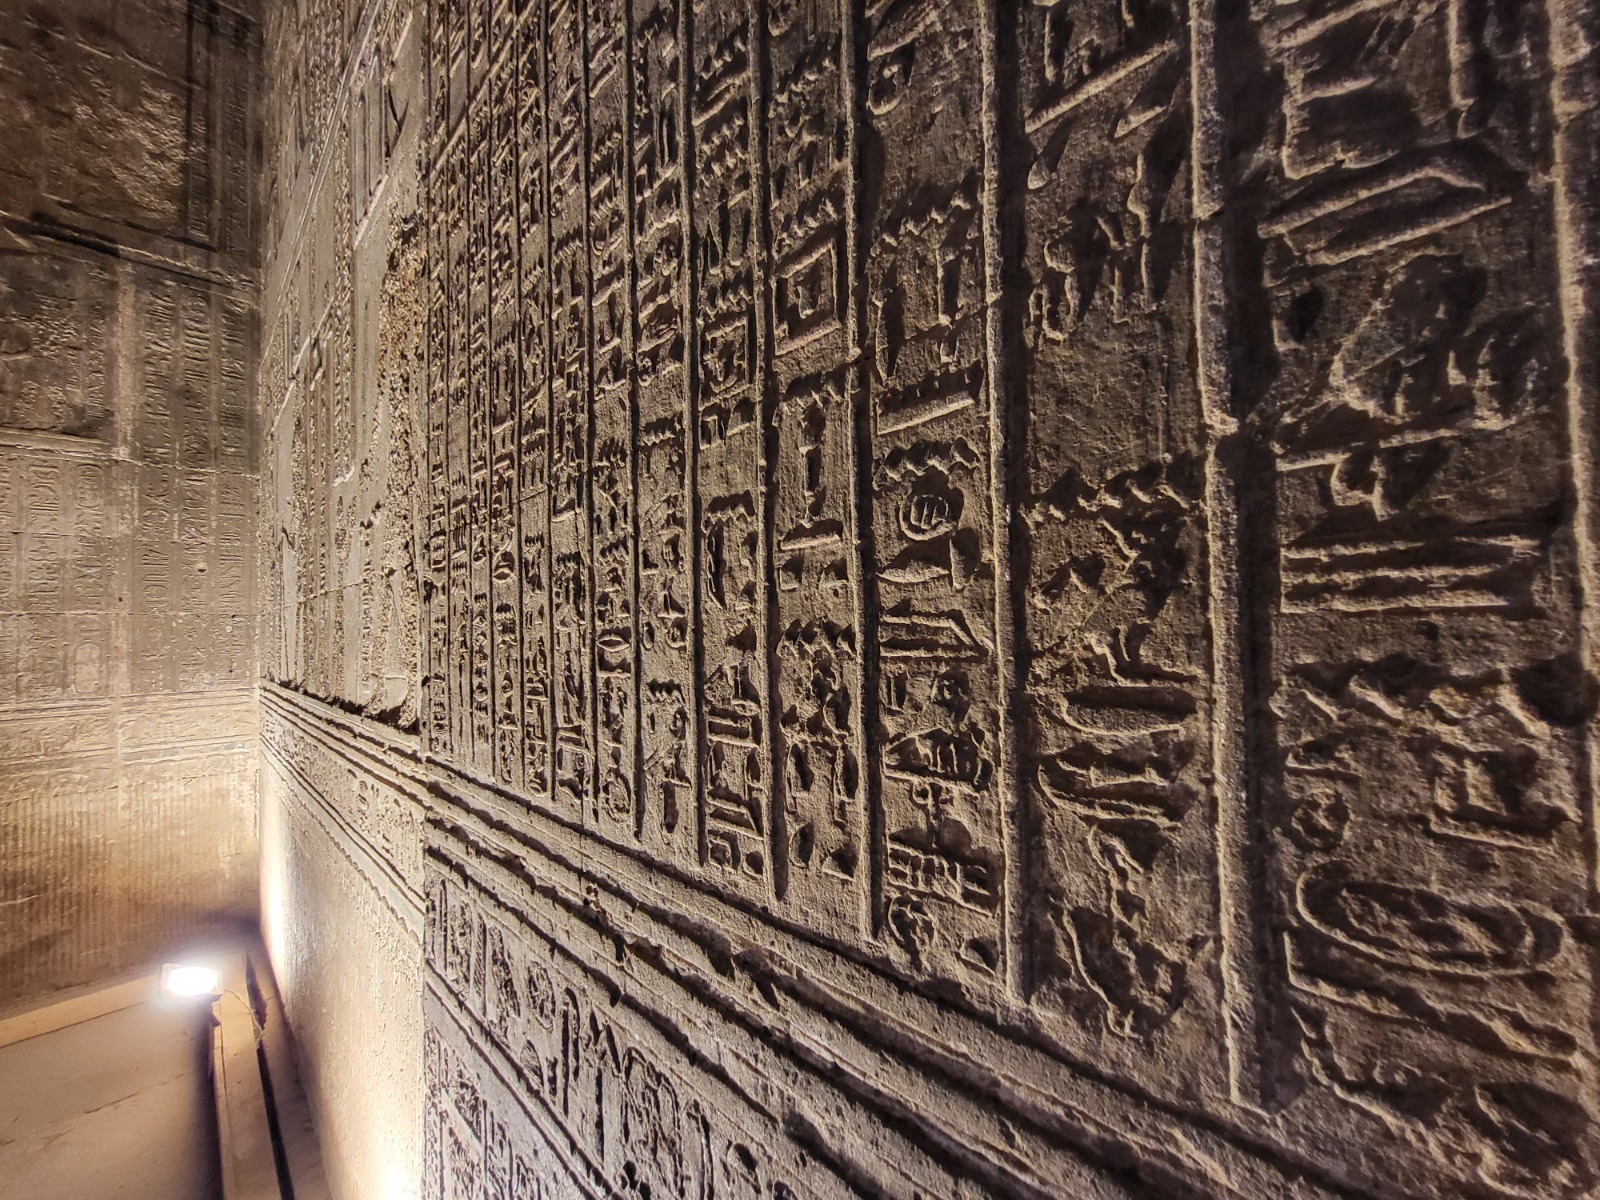 رسومات وكتابات هيروغليفية علي جدران المعبد من الداخل